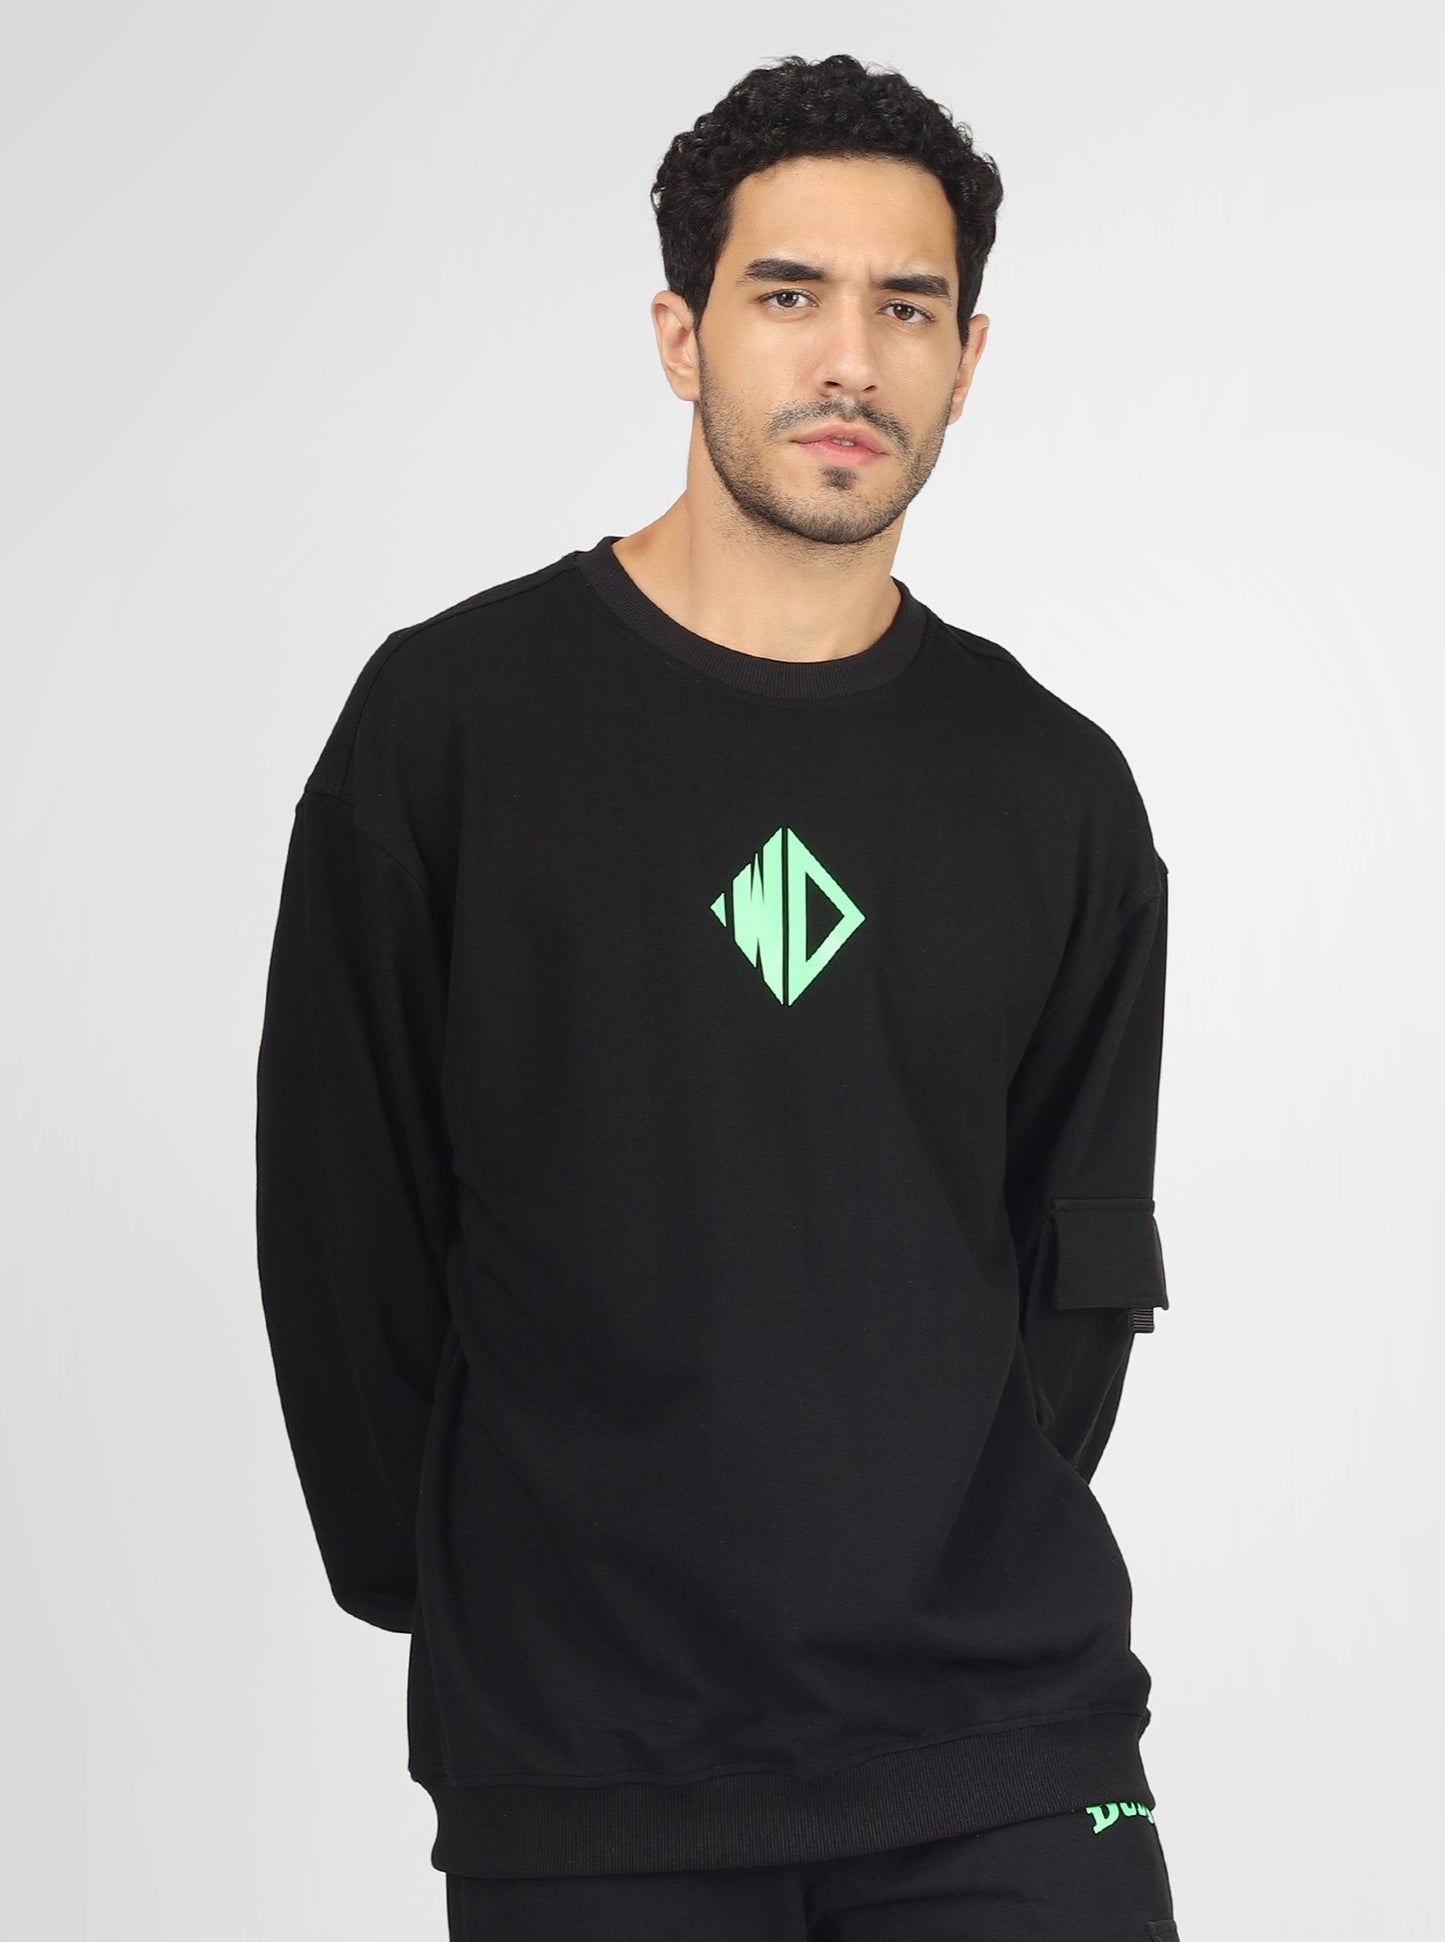 WD Oversized Sweatshirt - Wearduds